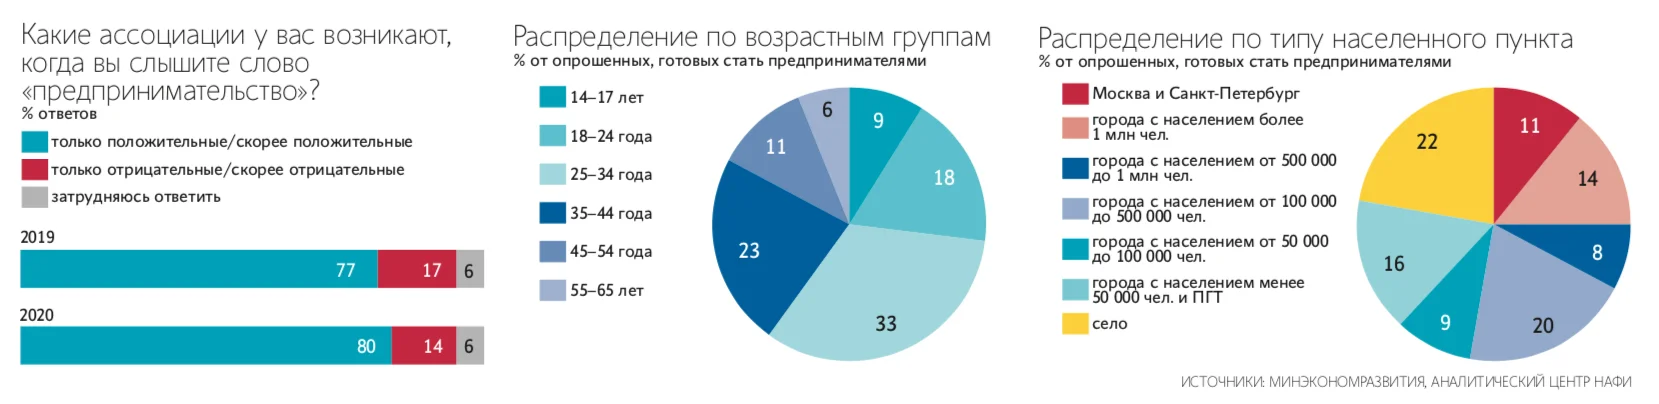 Исследование: 29% россиян хотят стать предпринимателями - фото 1